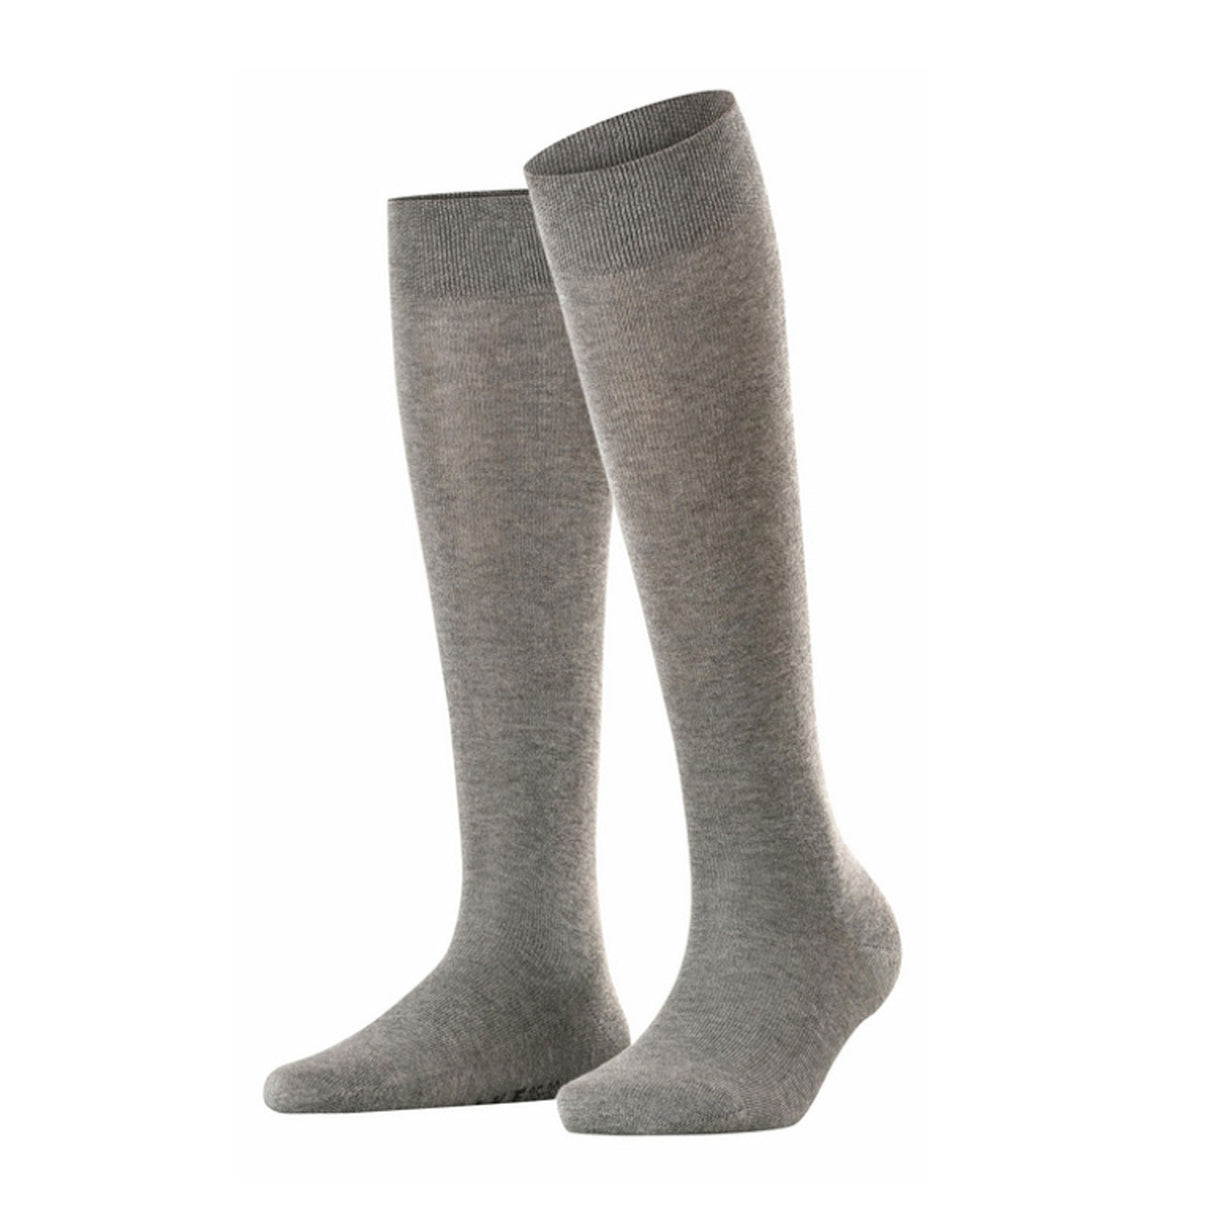 Falke Sensitive London (Women) - Grey Accessories - Socks - Lifestyle - The Heel Shoe Fitters